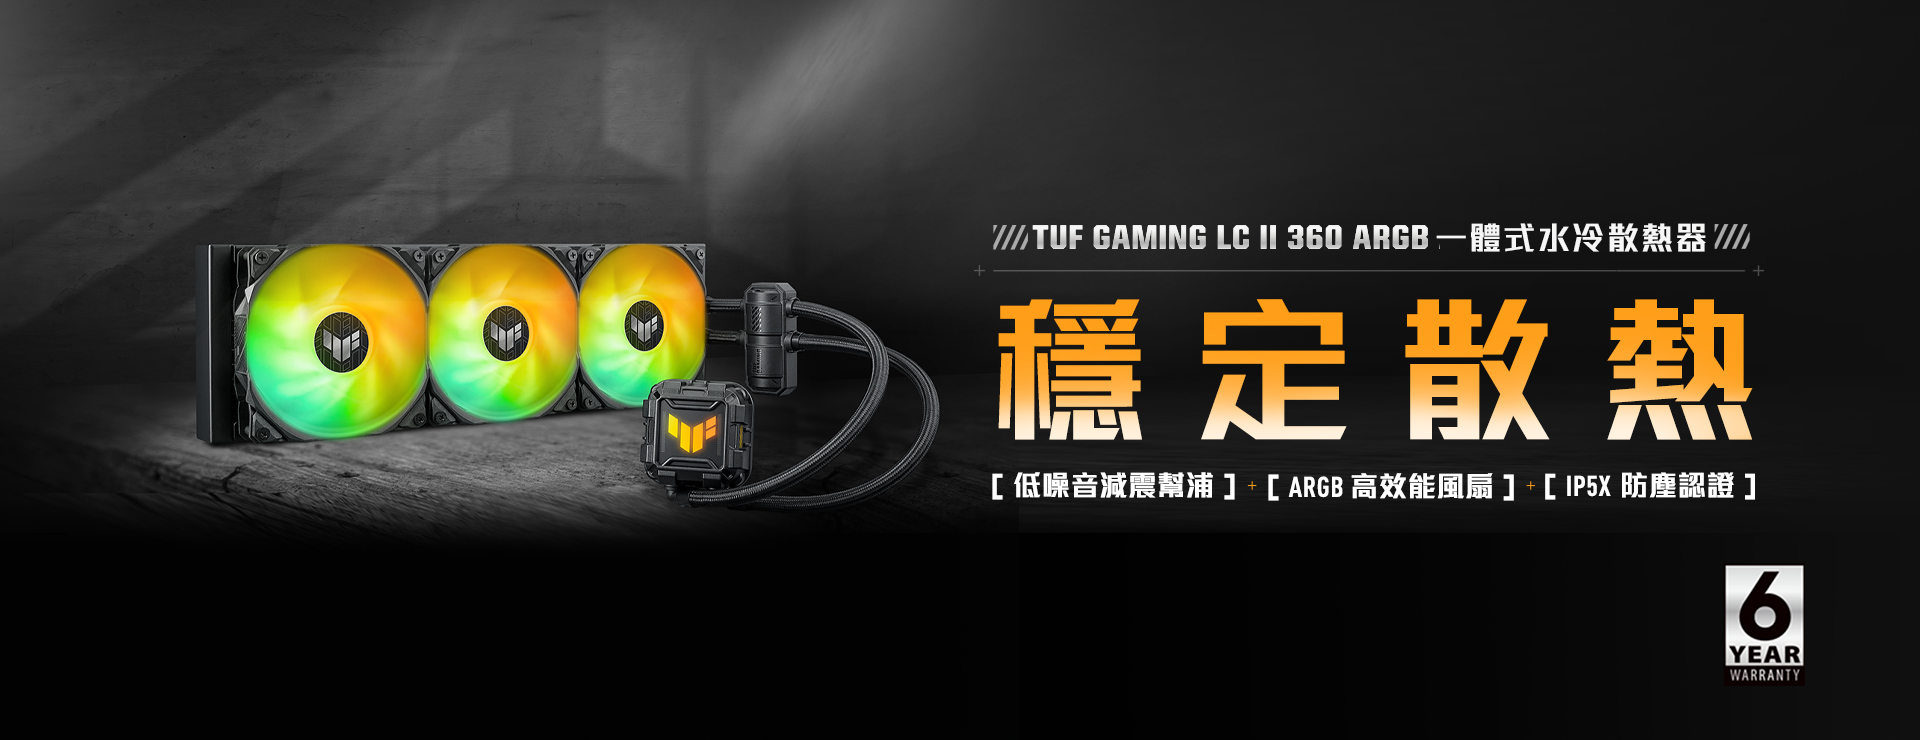 TUF Gaming LC 360 ARGB 橫幅